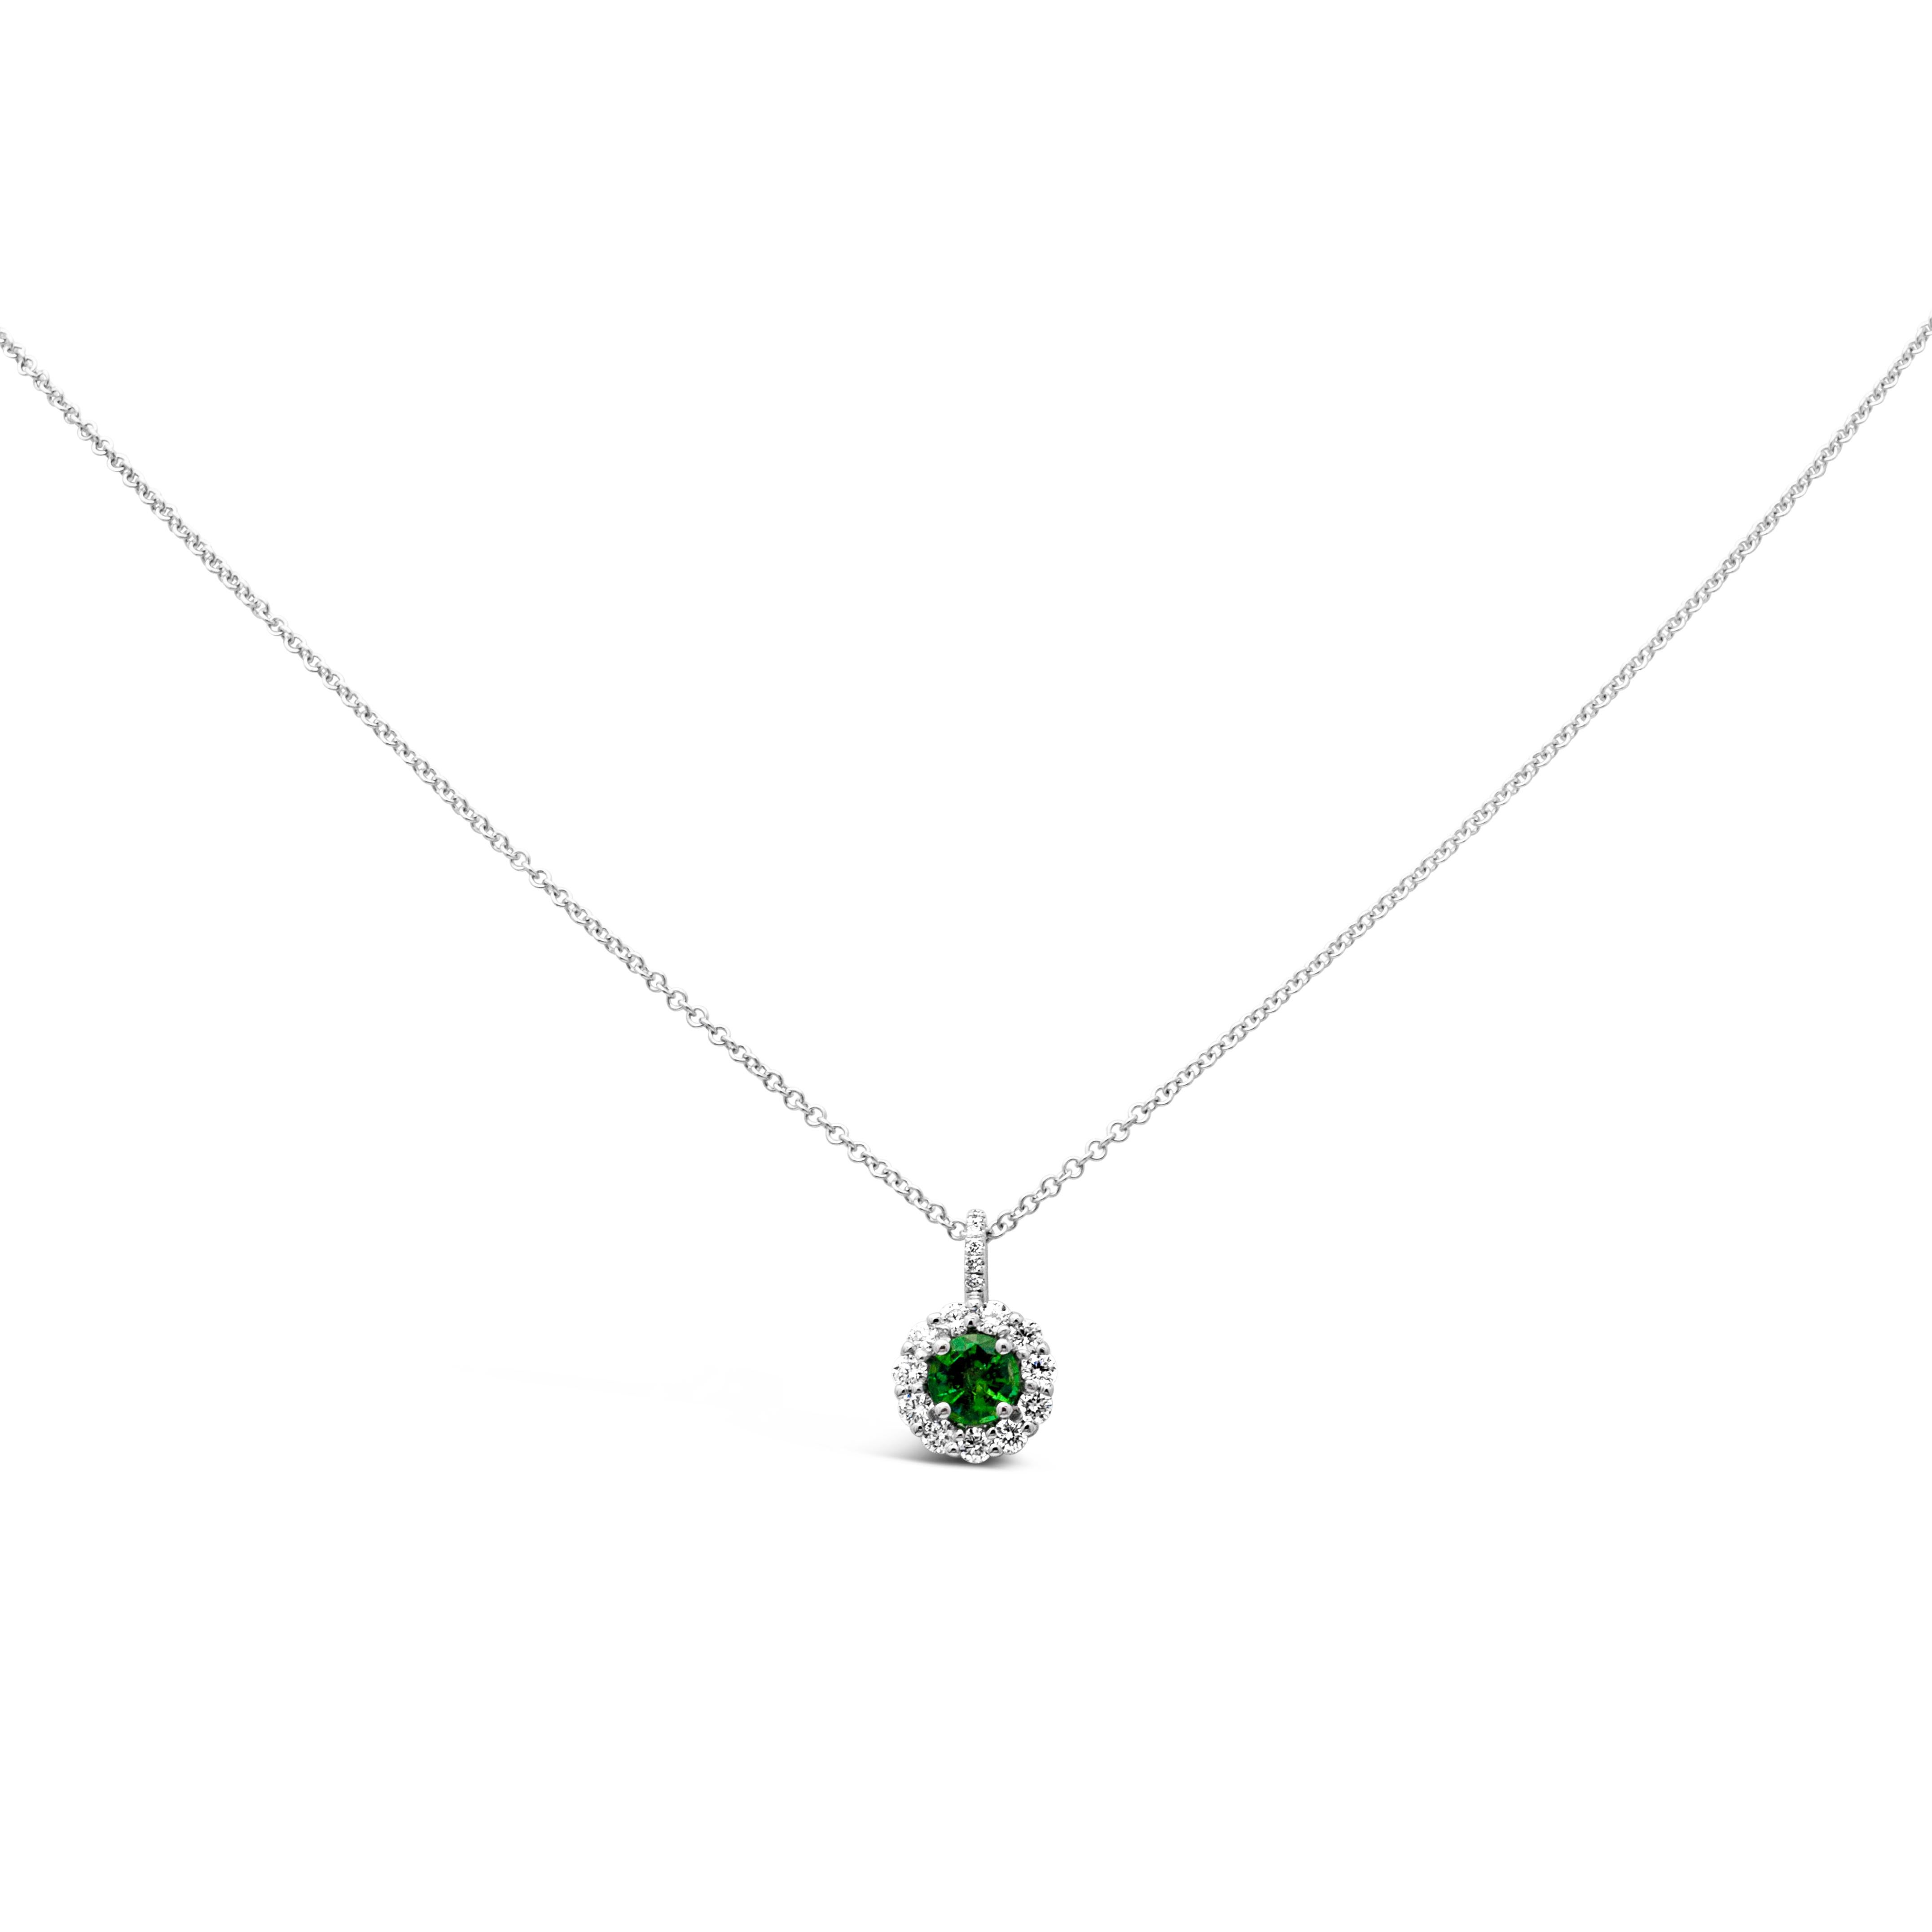 Eine edle Halskette mit einem grünen Smaragd mit Brillantschliff und einem Gewicht von 0,33 Karat, gefasst in einer klassischen vierzackigen Korbfassung. Umgeben von einer einzigen Reihe runder Brillanten in einem Halo-Design mit einem Gesamtgewicht